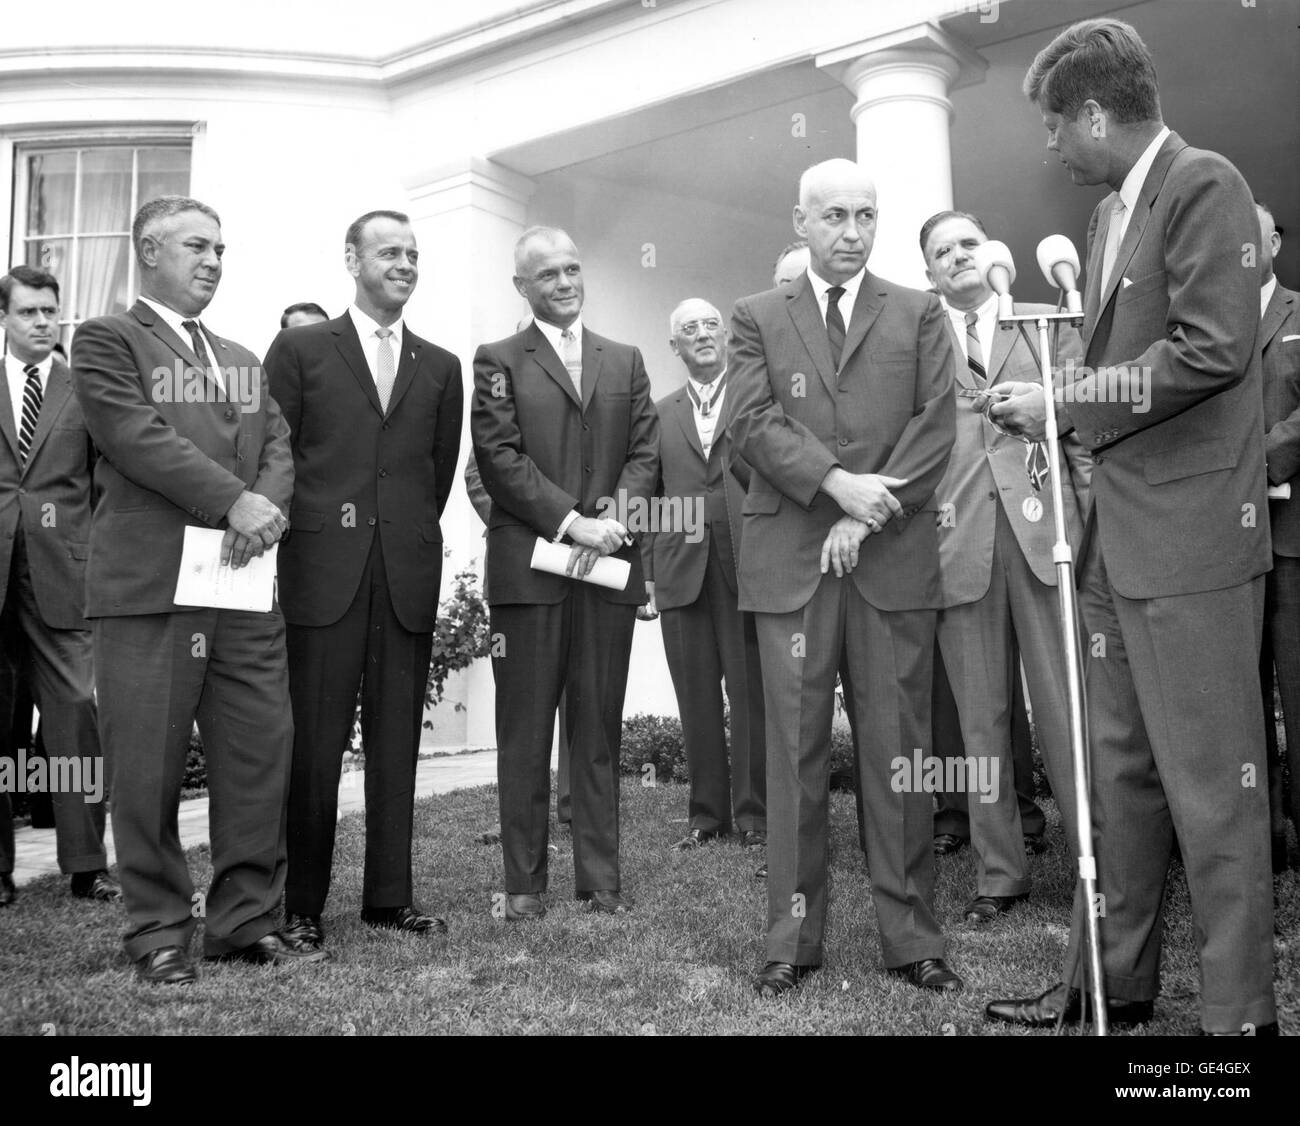 (1 août 1962) l'ancien président John F. Kennedy remet à M. Robert R. Gilruth Directeur du Manned Spacecraft Center de Houston, au Texas, avec la médaille de distinction de la fonction publique fédérale. La cérémonie a eu lieu sur la pelouse de la Maison Blanche. Étaient présents à cette deuxième de gauche à droite : l'astronaute Alan Sheppard, l'astronaute John Glenn, le Dr Robert R. Gilruth, l'administrateur de la NASA, James Webb et le président John F. Kennedy. Image #  : JFK-GILRUTH Banque D'Images